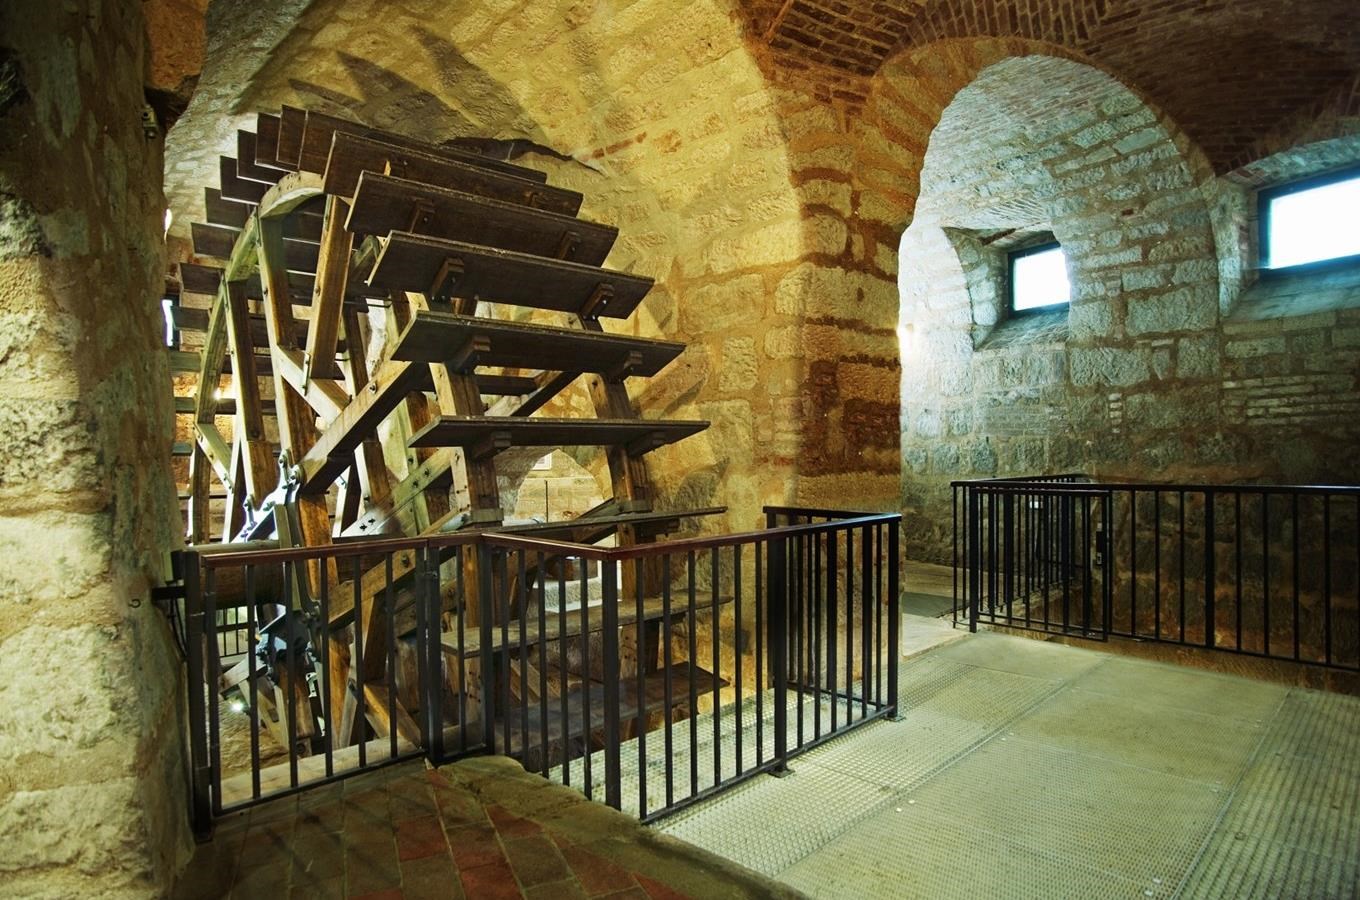 Užijte si speciální prohlídky Plzeňského historického podzemí za svitu baterek